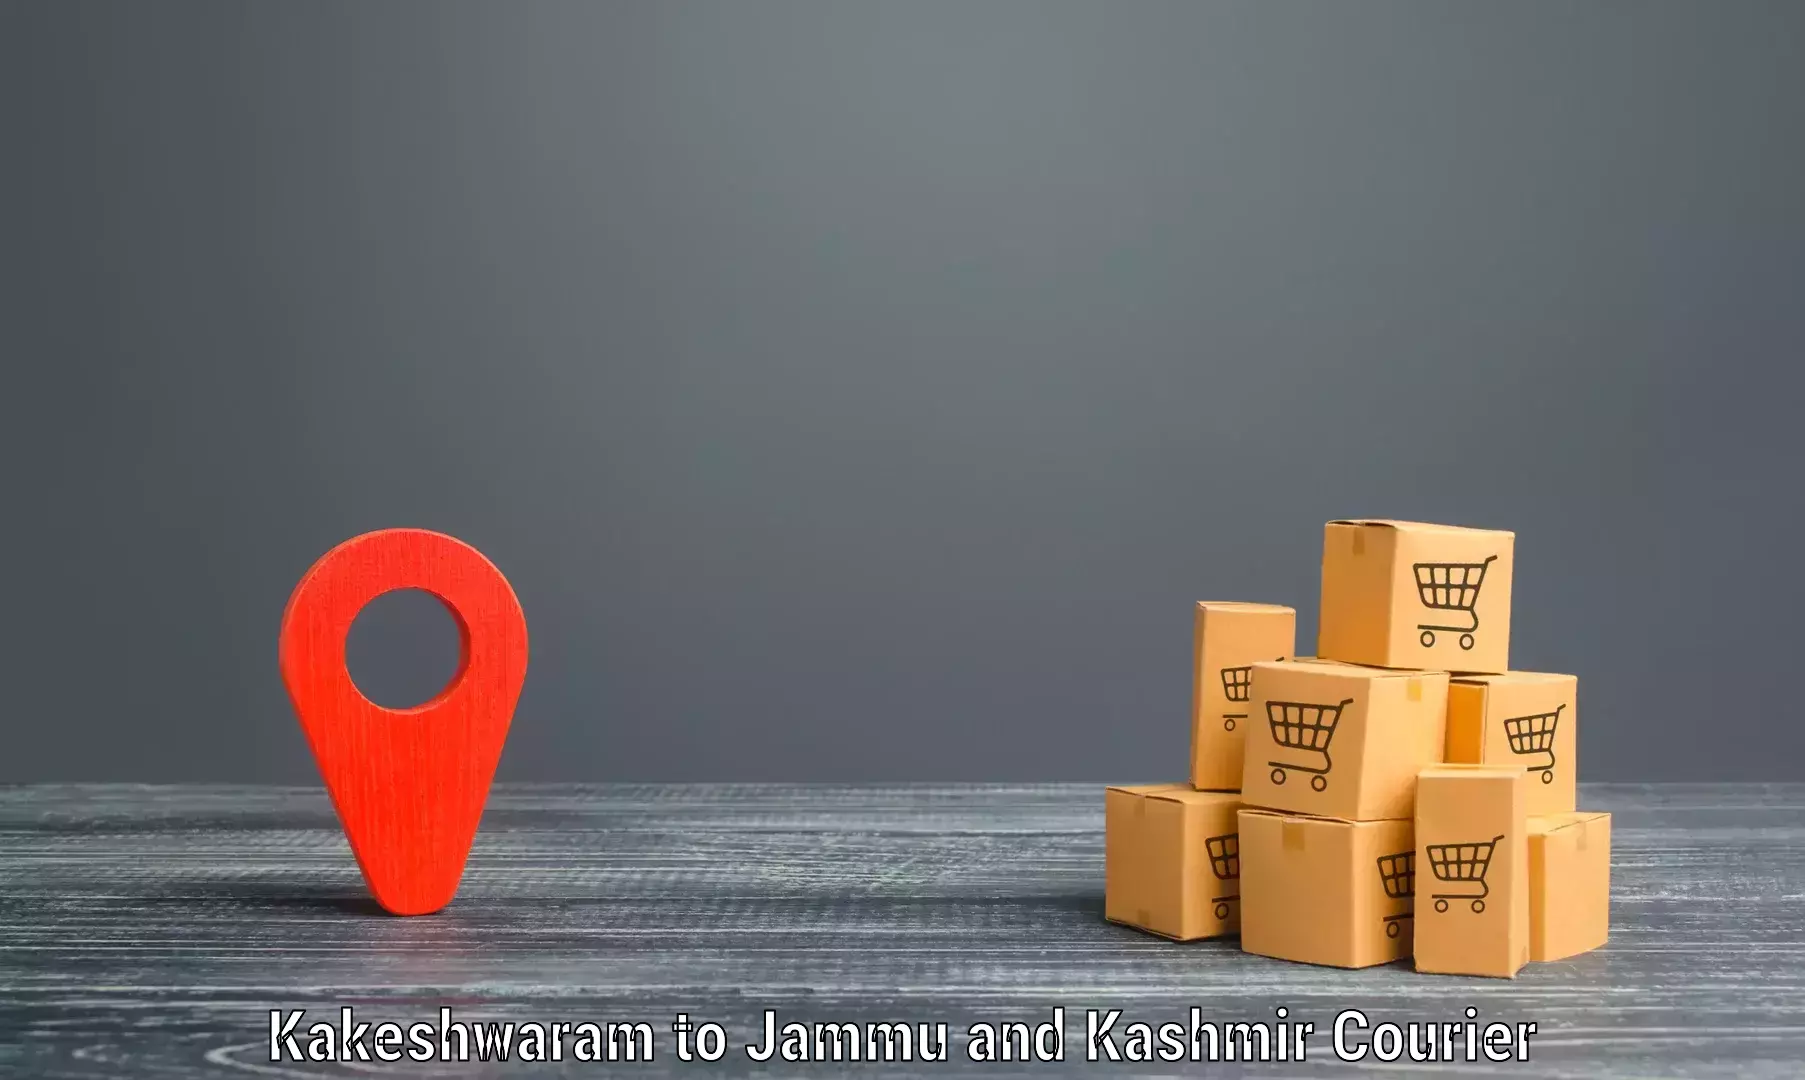 Professional courier handling Kakeshwaram to Poonch